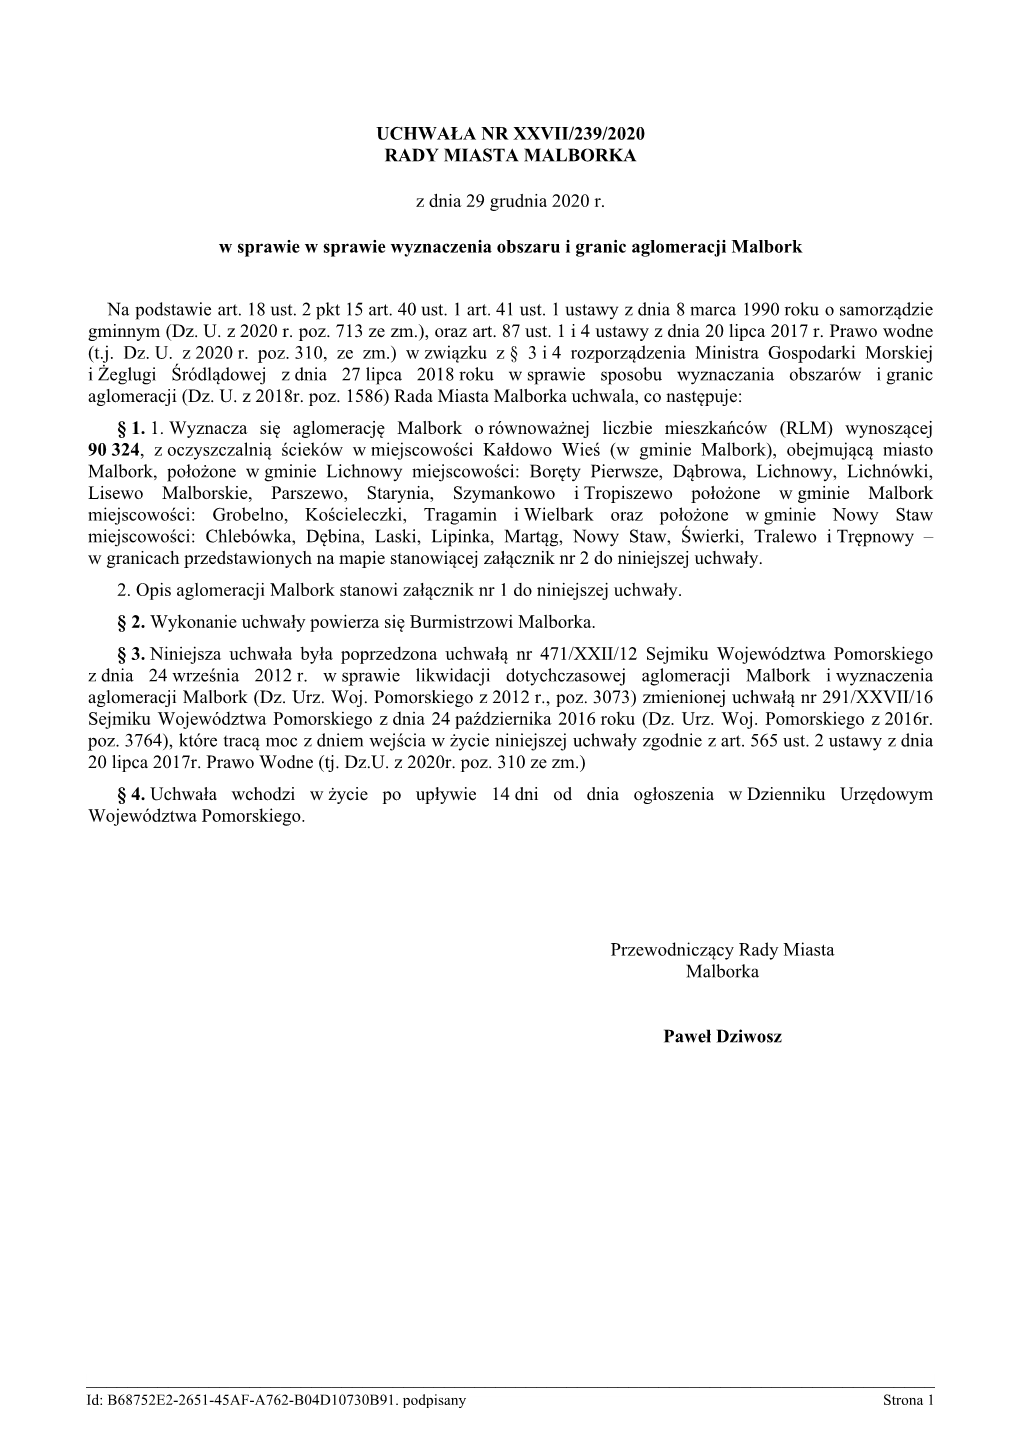 Uchwała Nr Xxvii/239/2020 Rady Miasta Malborka